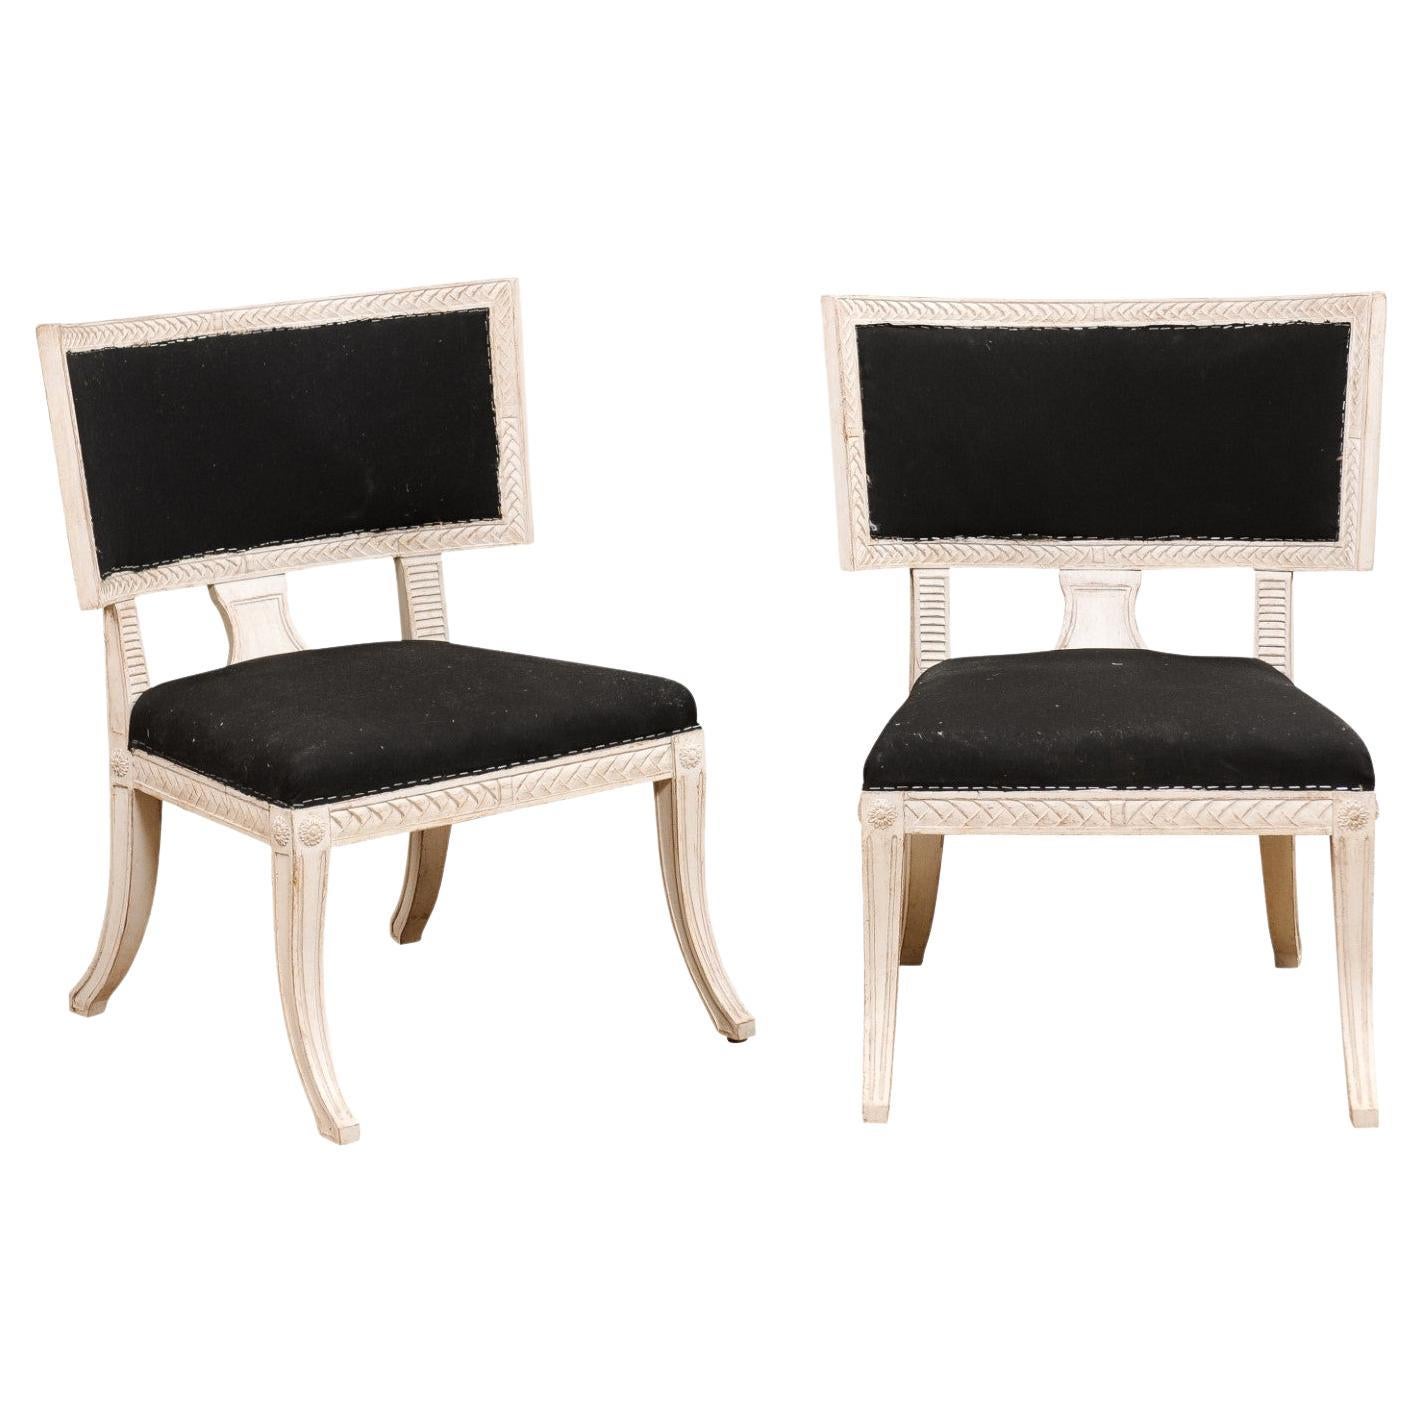 Paar schwedische Klismos-Beistellstühle im neoklassischen Stil, bemalt und geschnitzt